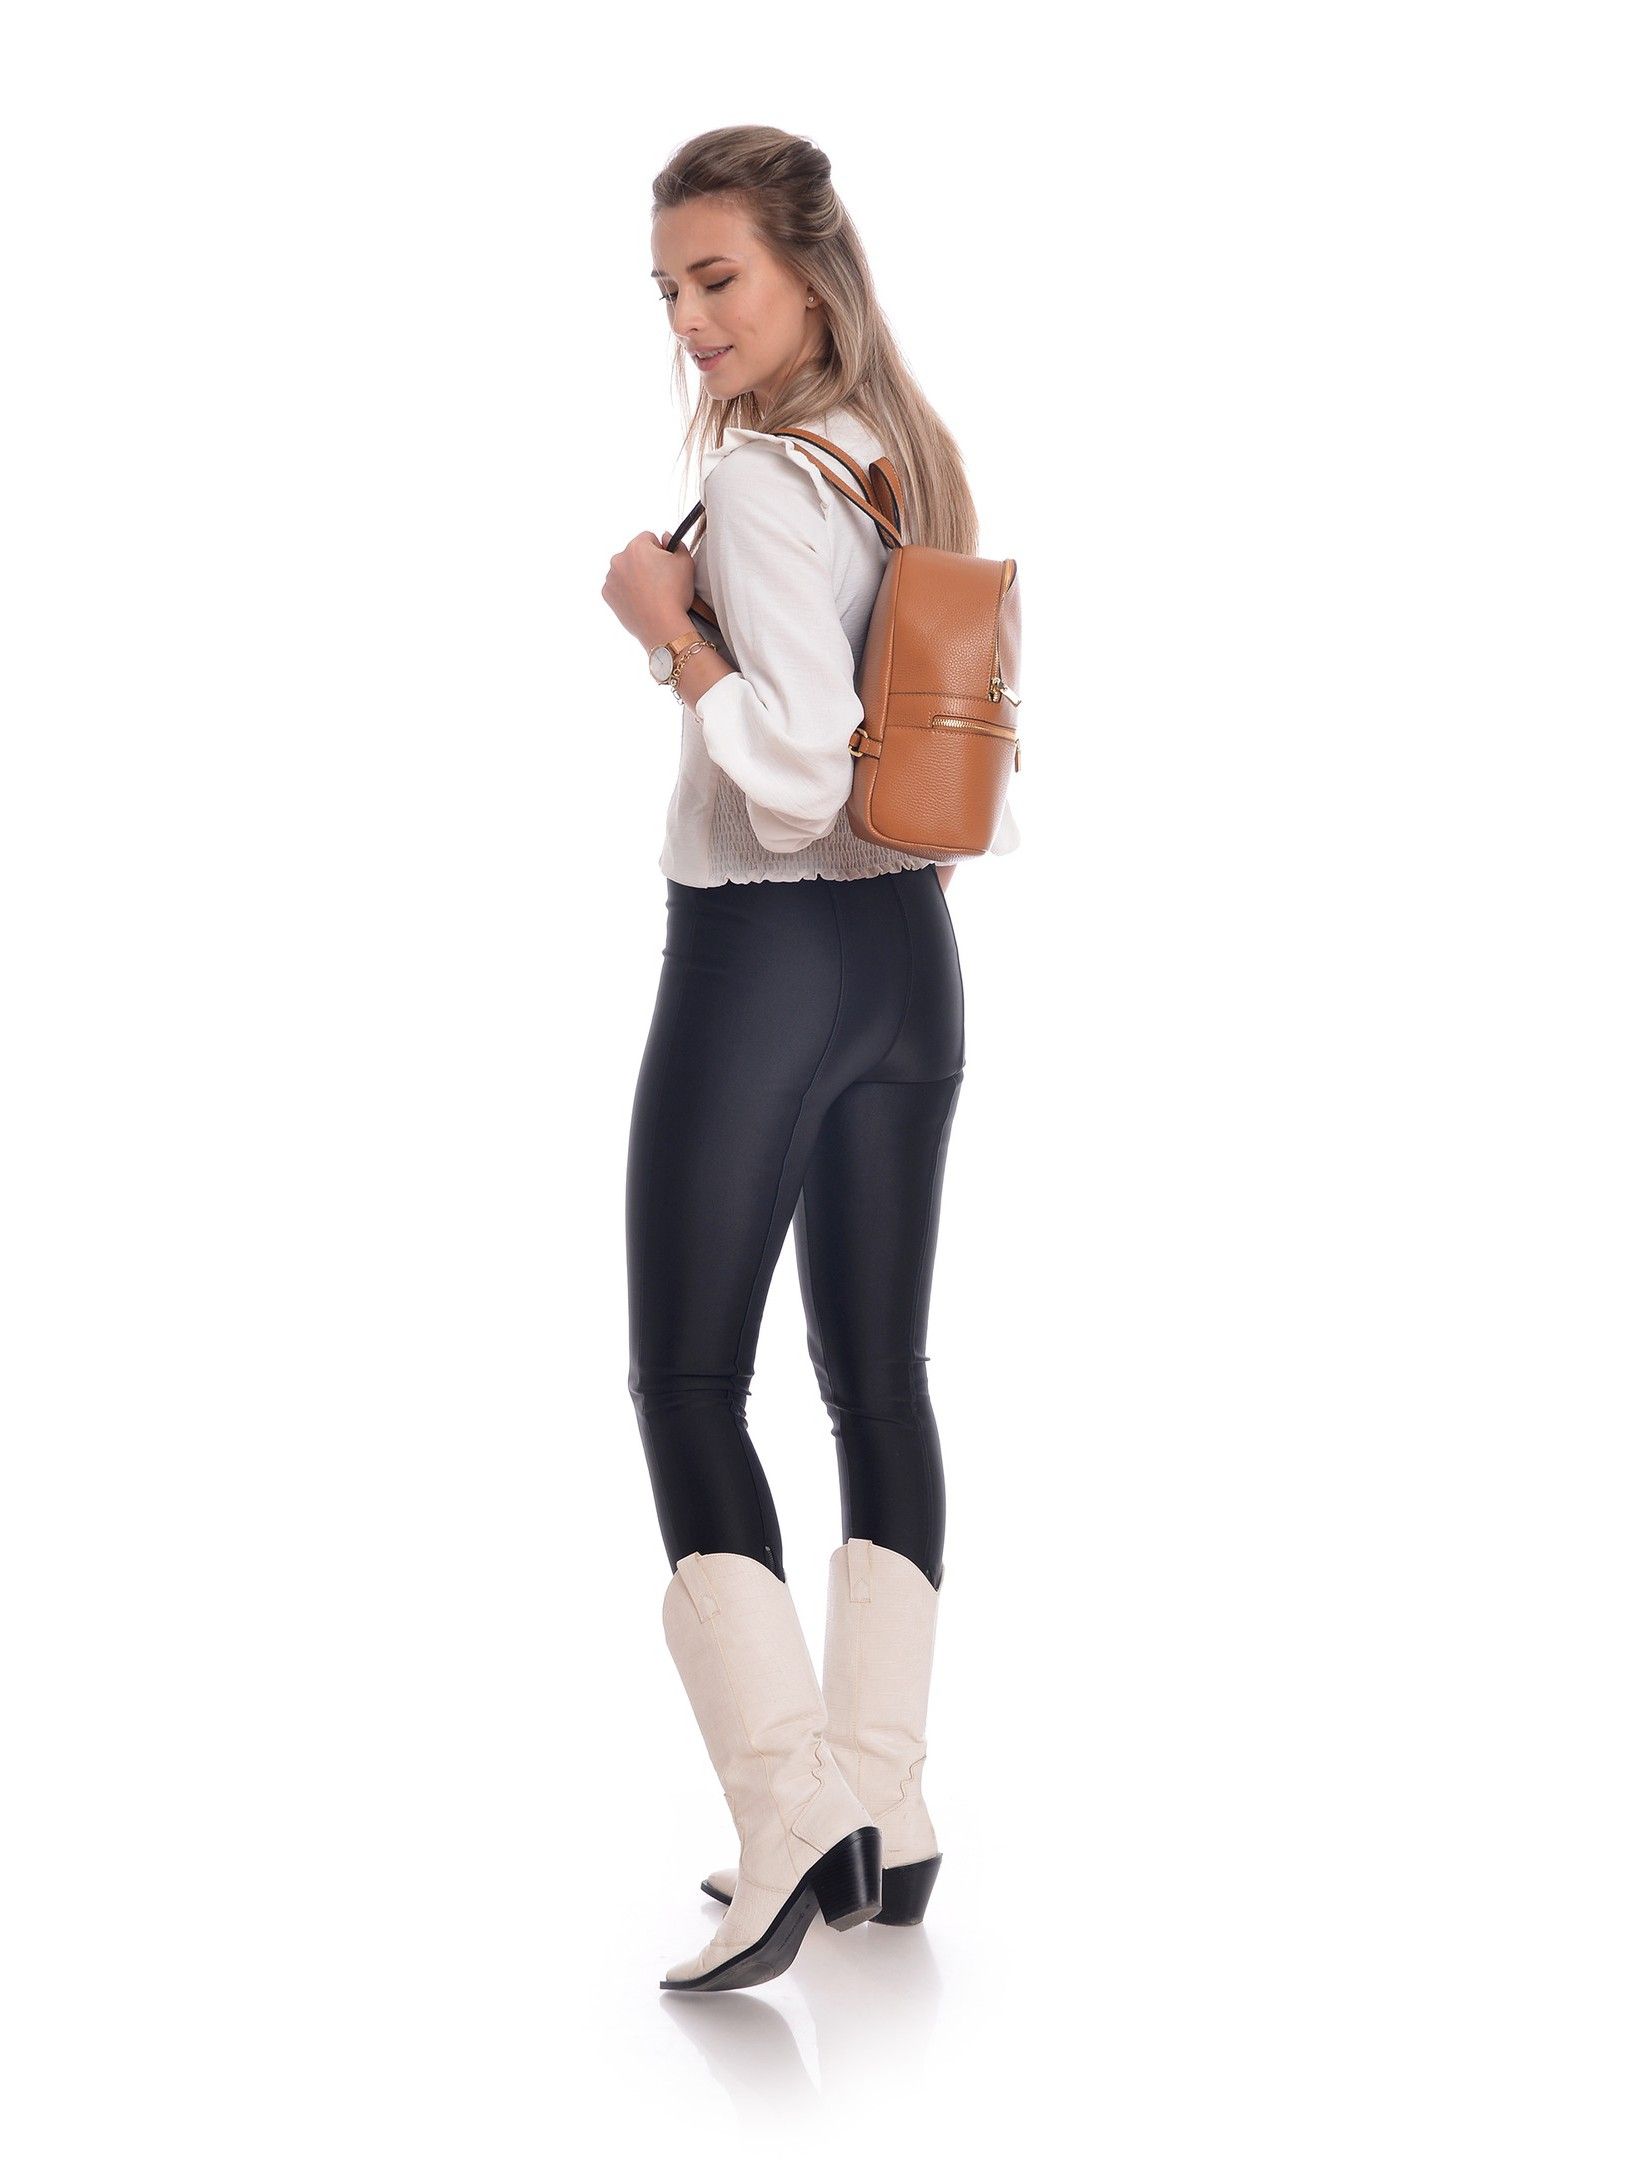 Backpack
100% cow leather
Top zip closure
Front zip pocket
Dimensions (L) 29x23x10 cm
Handle: 19.5 cm
Shoulder strap: 80cm x 4